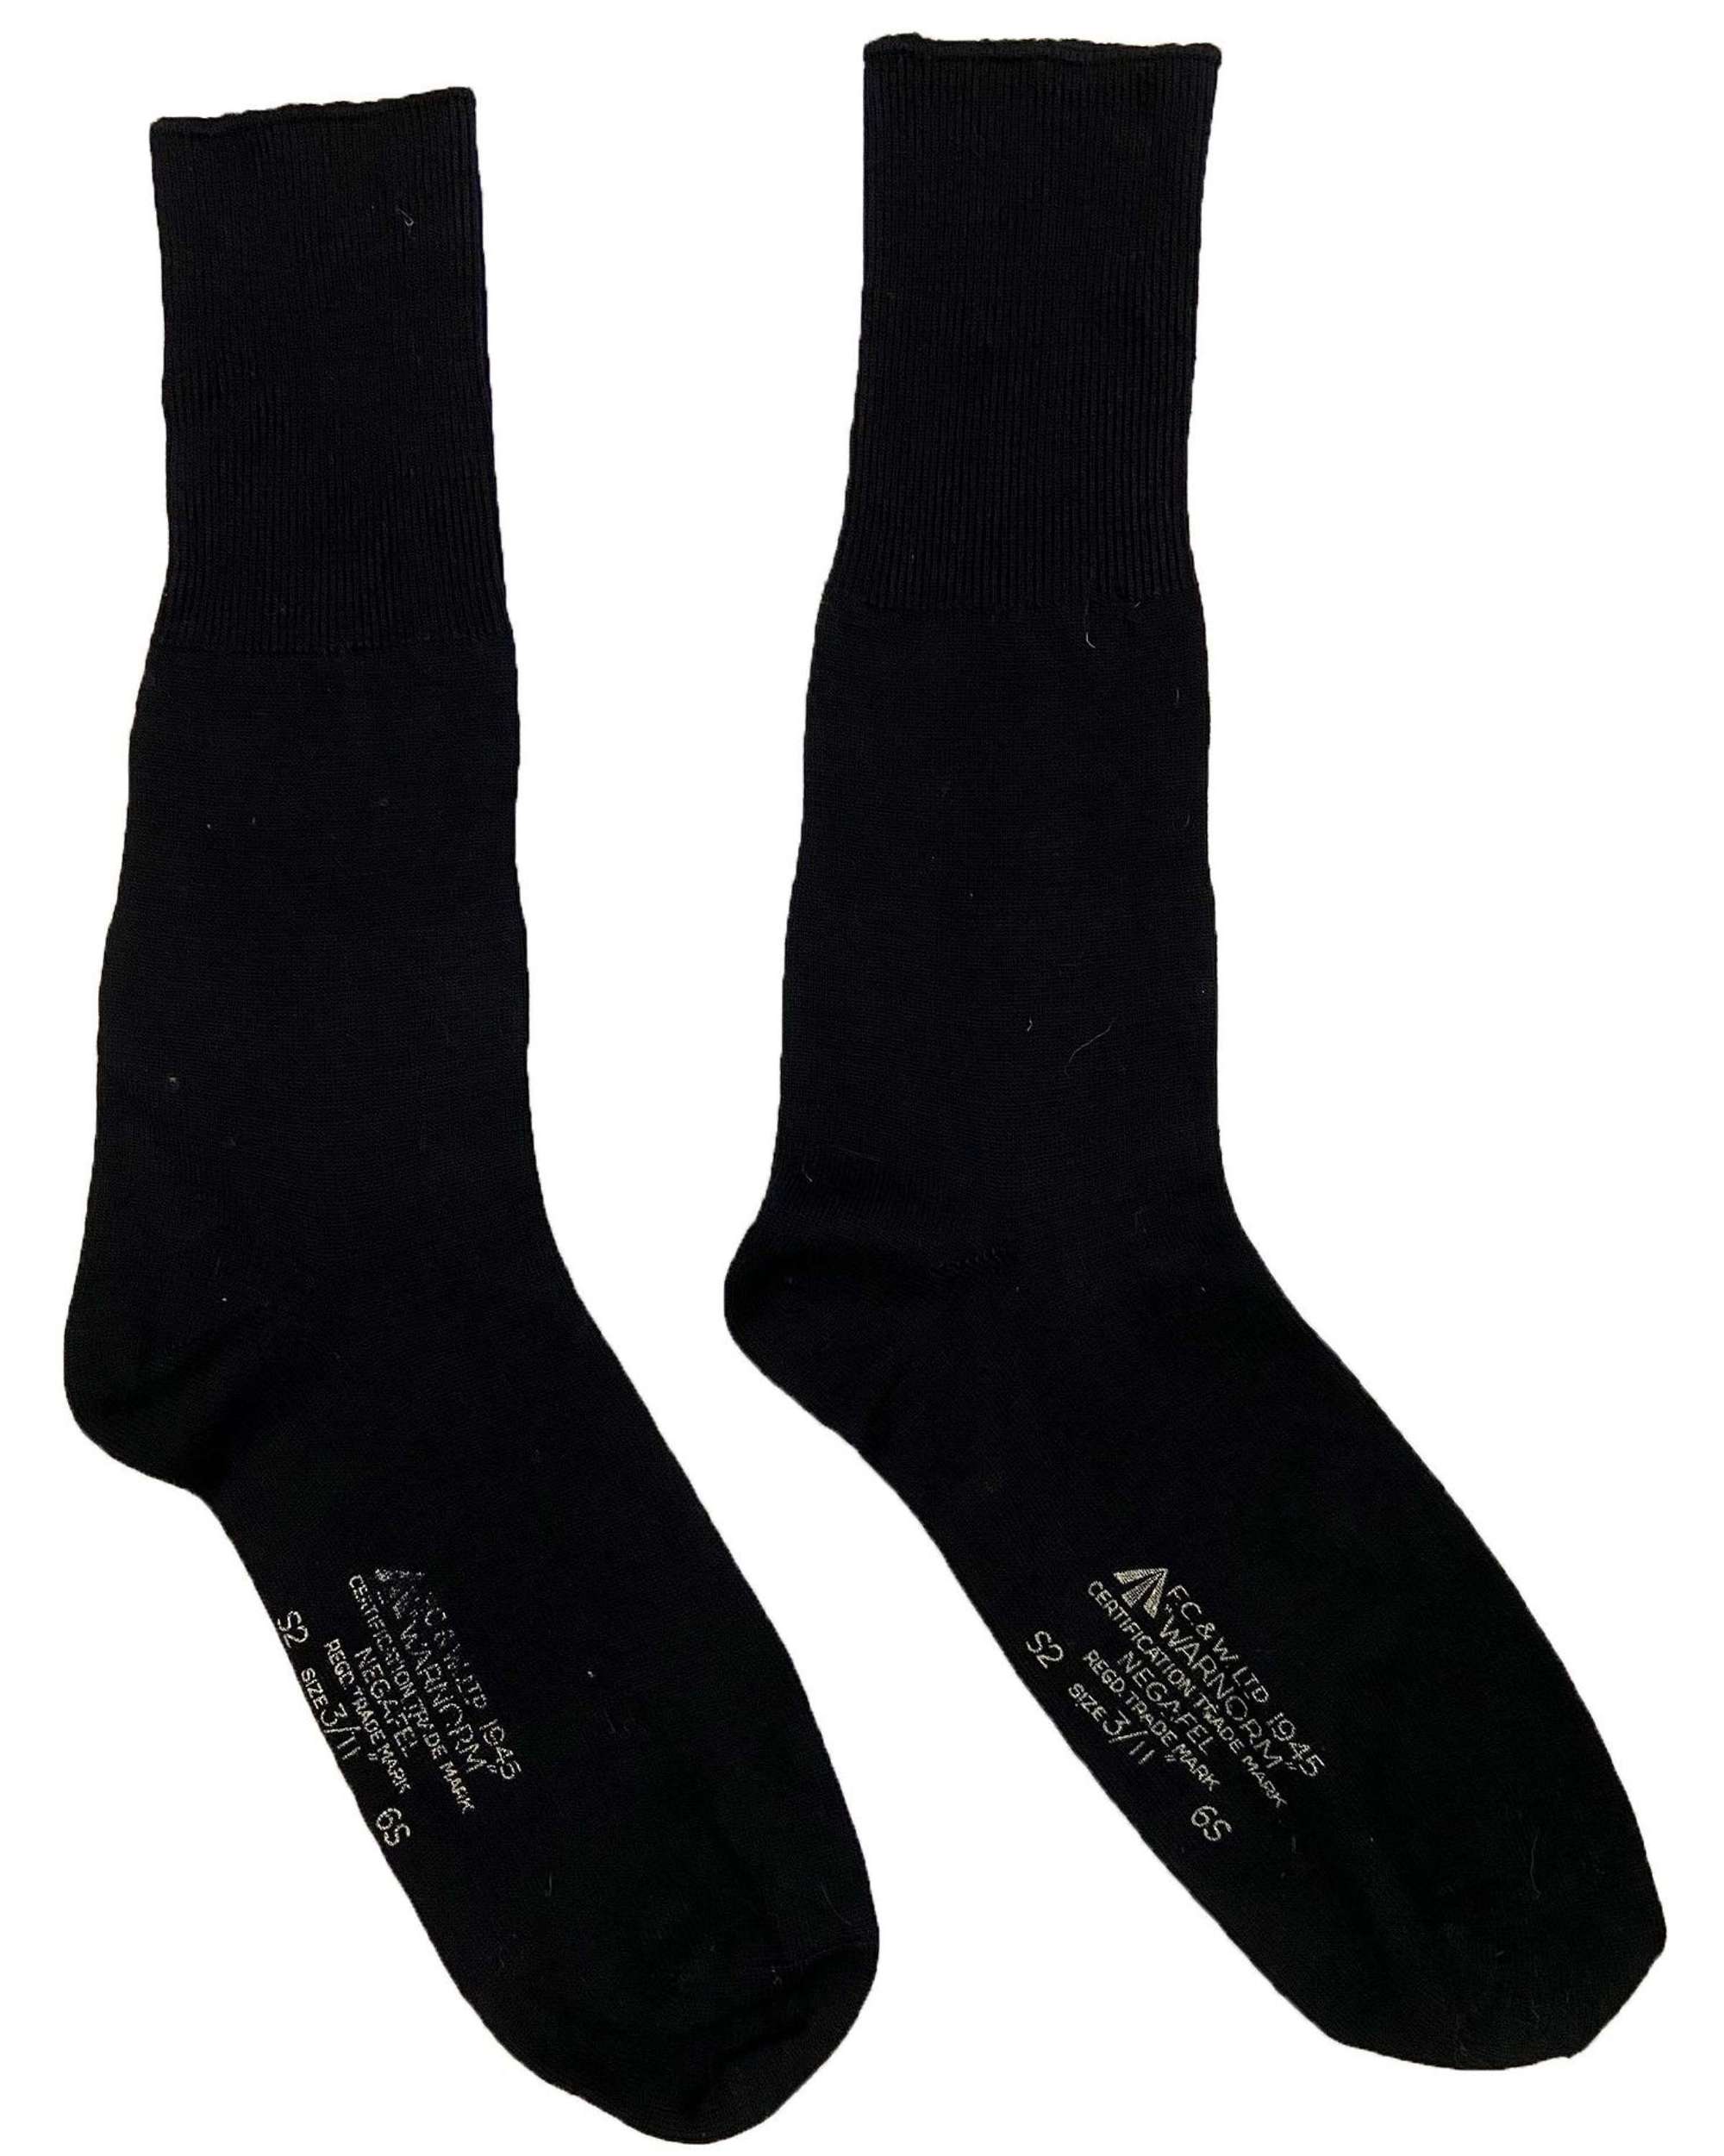 Rare Original 1945 Dated RAF Black Wool Socks by 'F. C. & W Ltd'